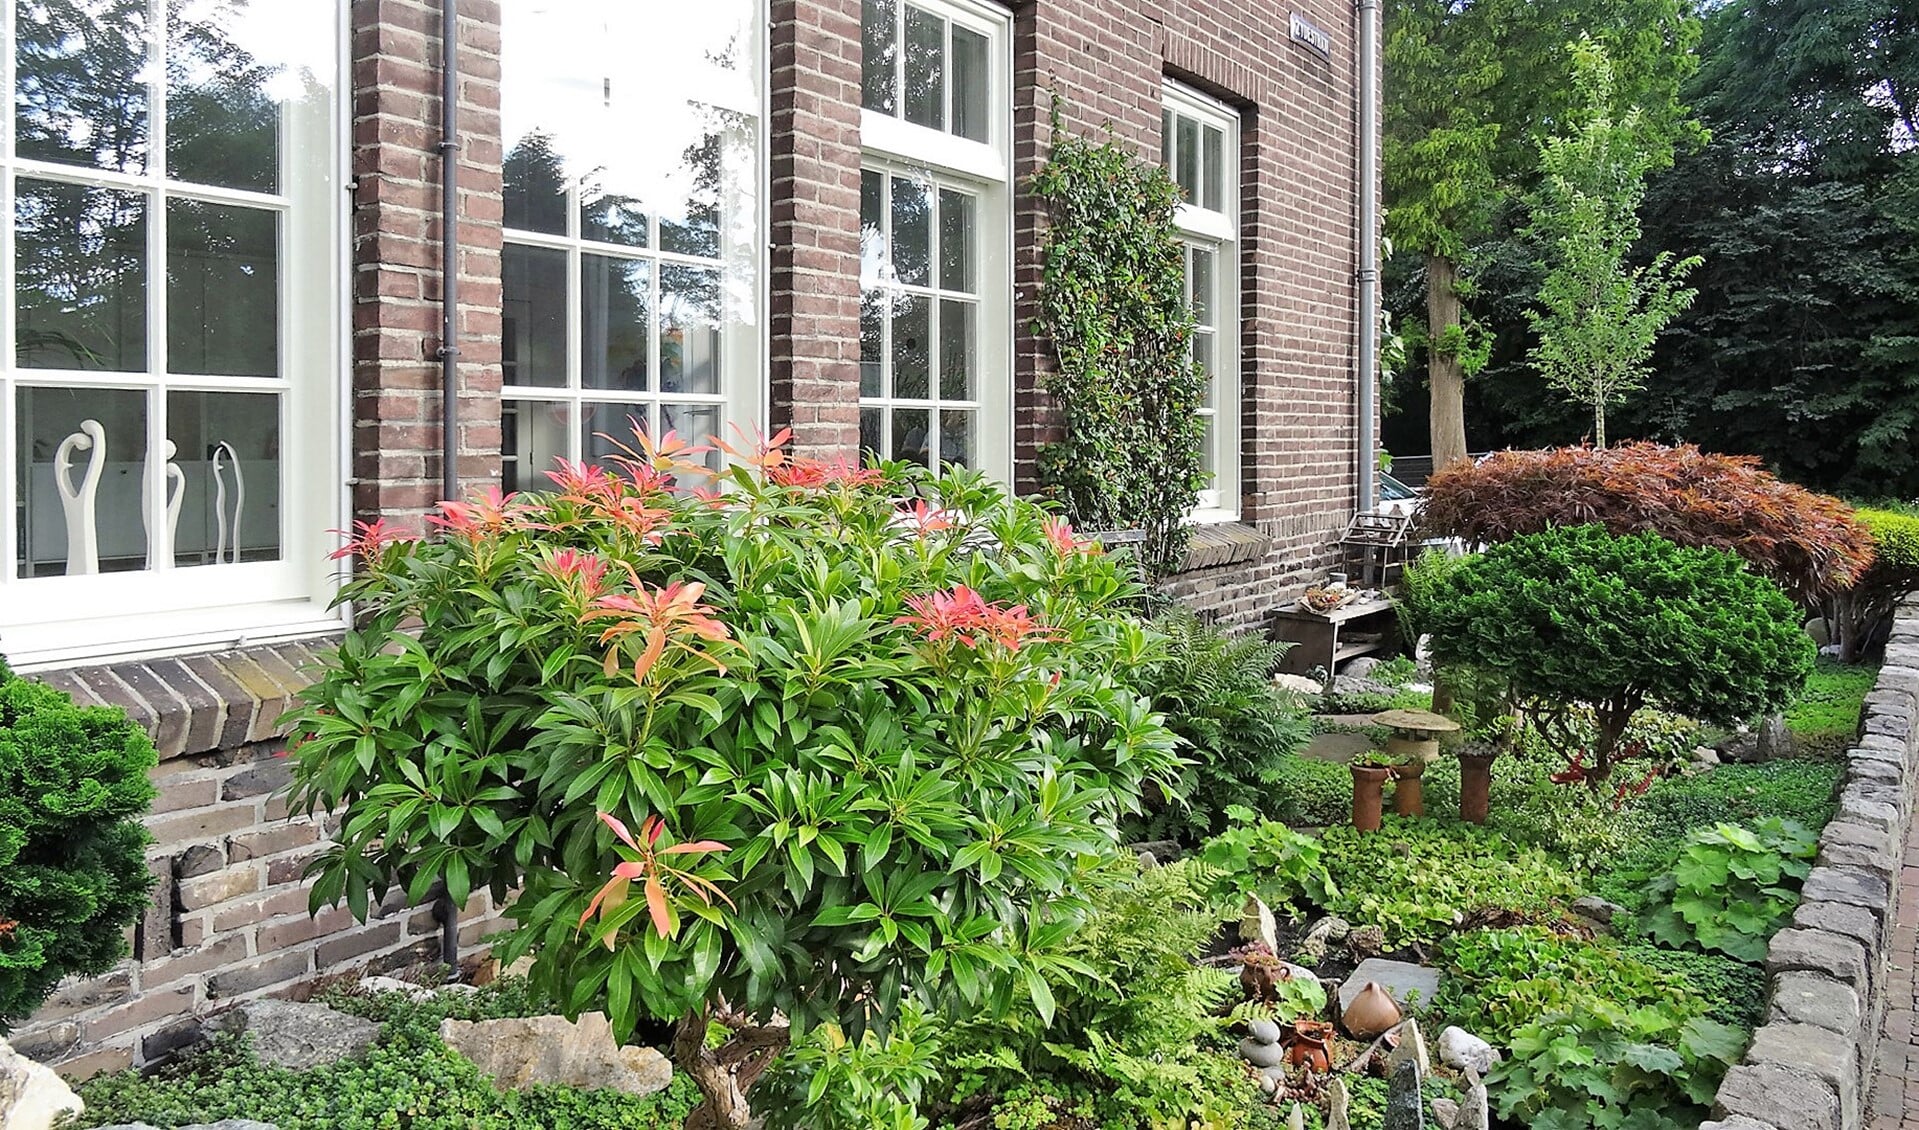 De mooiste voortuin van Leidschendam is de tuin van Wil Bleijs aan de Plaspoelkade 1 in Leidschendam (foto: pr).